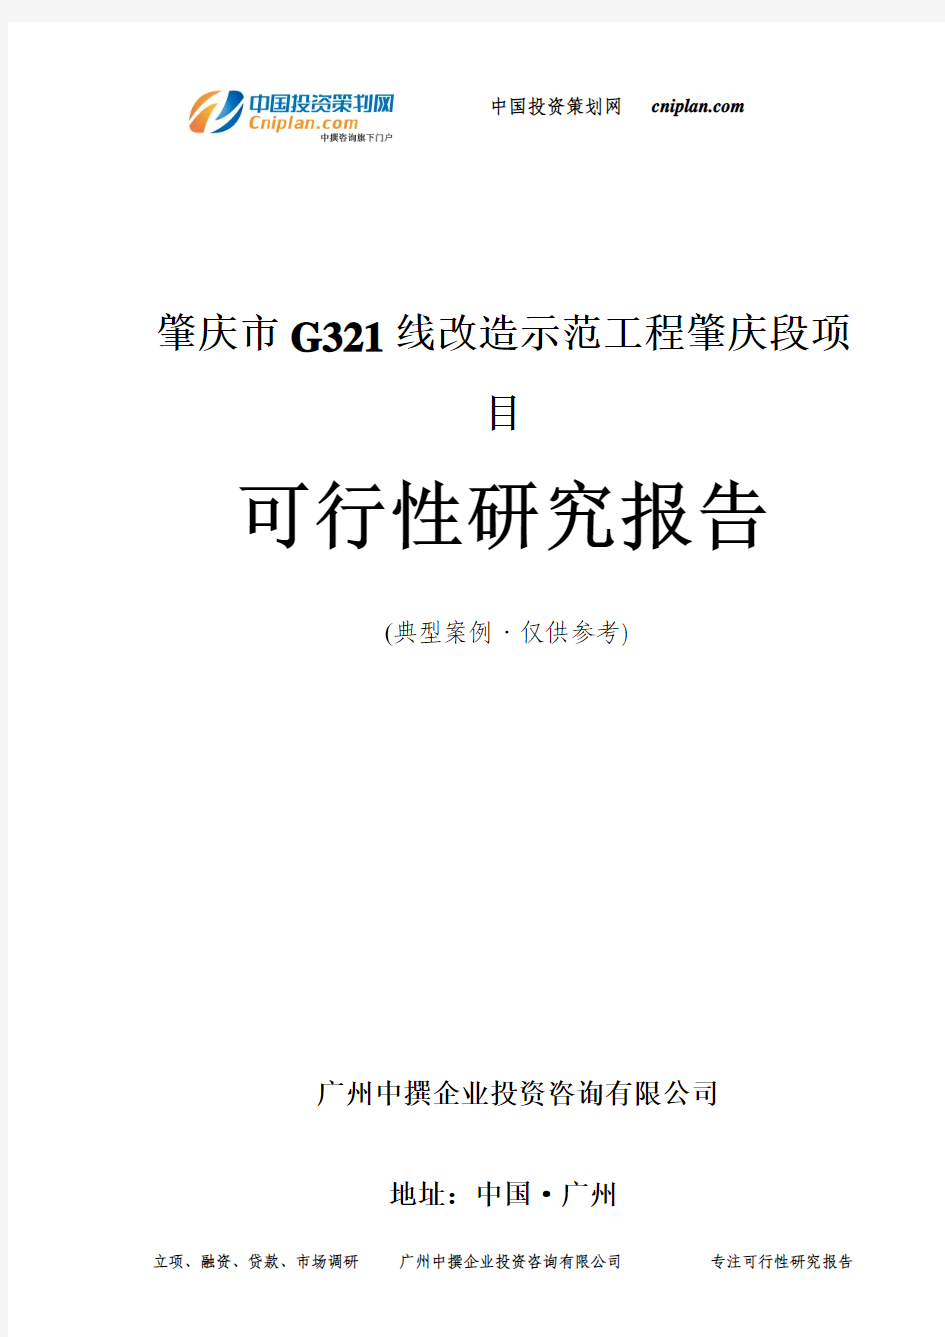 肇庆市G321线改造示范工程肇庆段项目可行性研究报告-广州中撰咨询